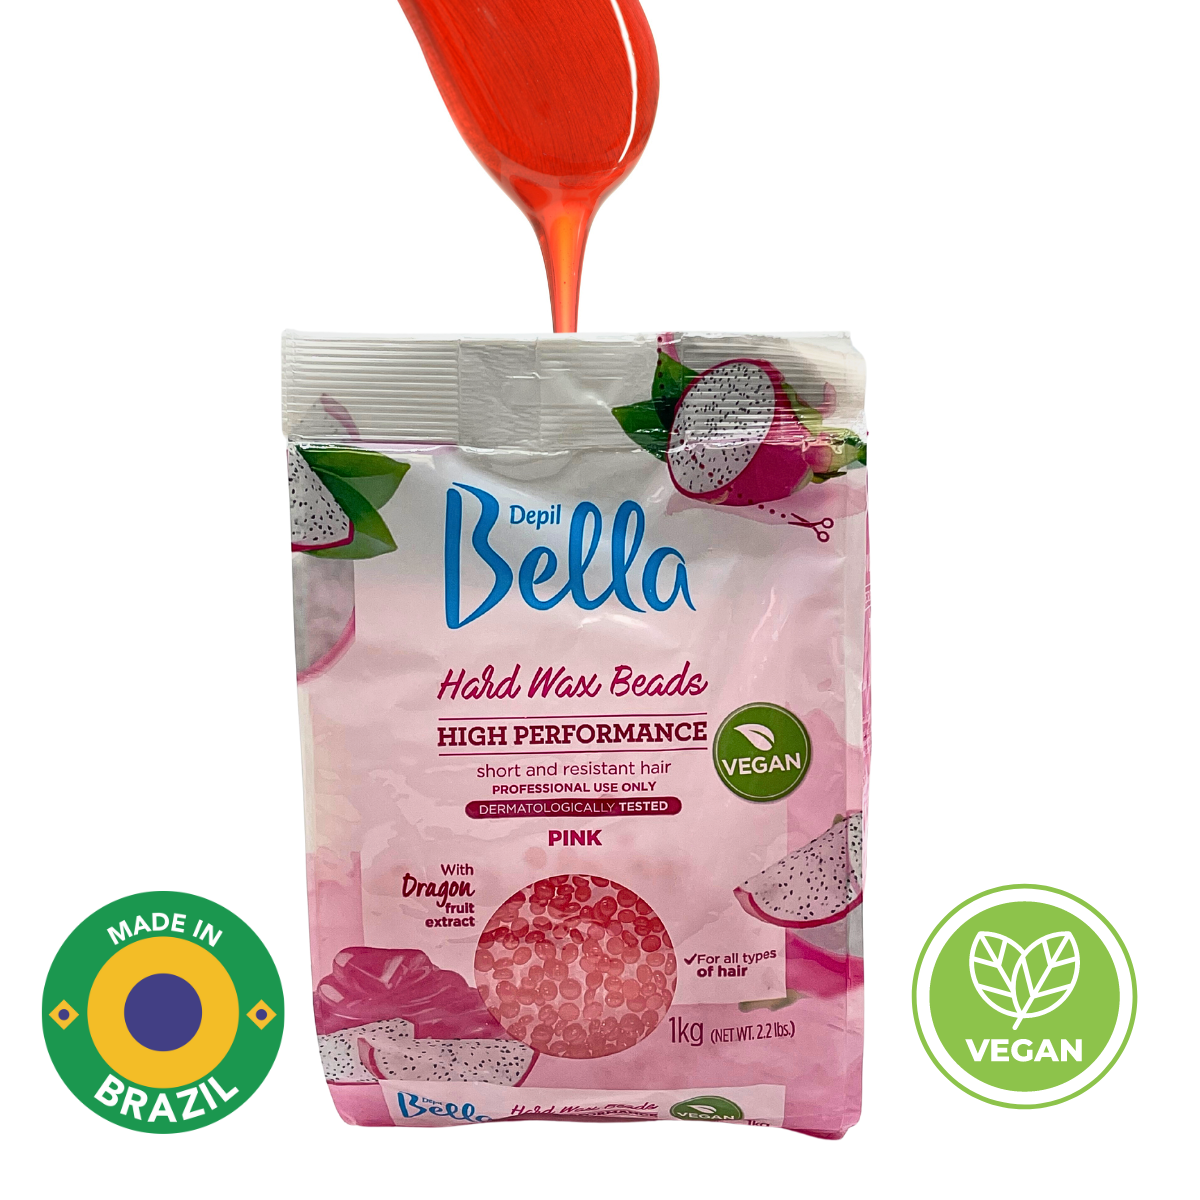 Depil Bella Pink Pitaya Confetti Perlas de cera dura - Depilación de alto rendimiento, Vegano 2.2 lbs (oferta de 10 unidades)